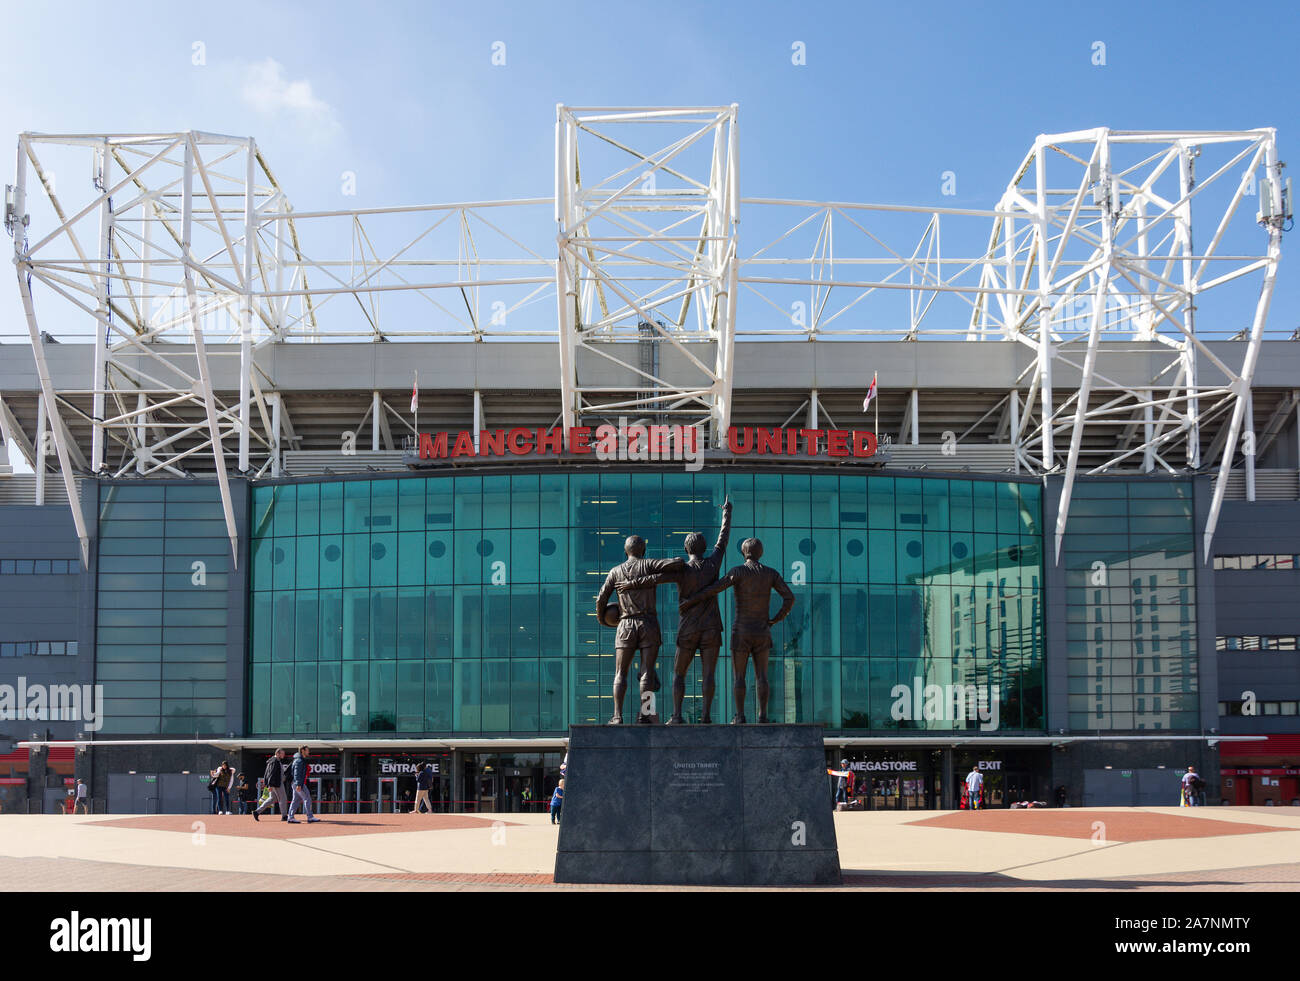 Haupteingang zum Manchester United Football Ground, Old Trafford Sir Matt Busby Way, Stretford, Trafford, Greater Manchester, England, Vereinigtes Königreich Stockfoto